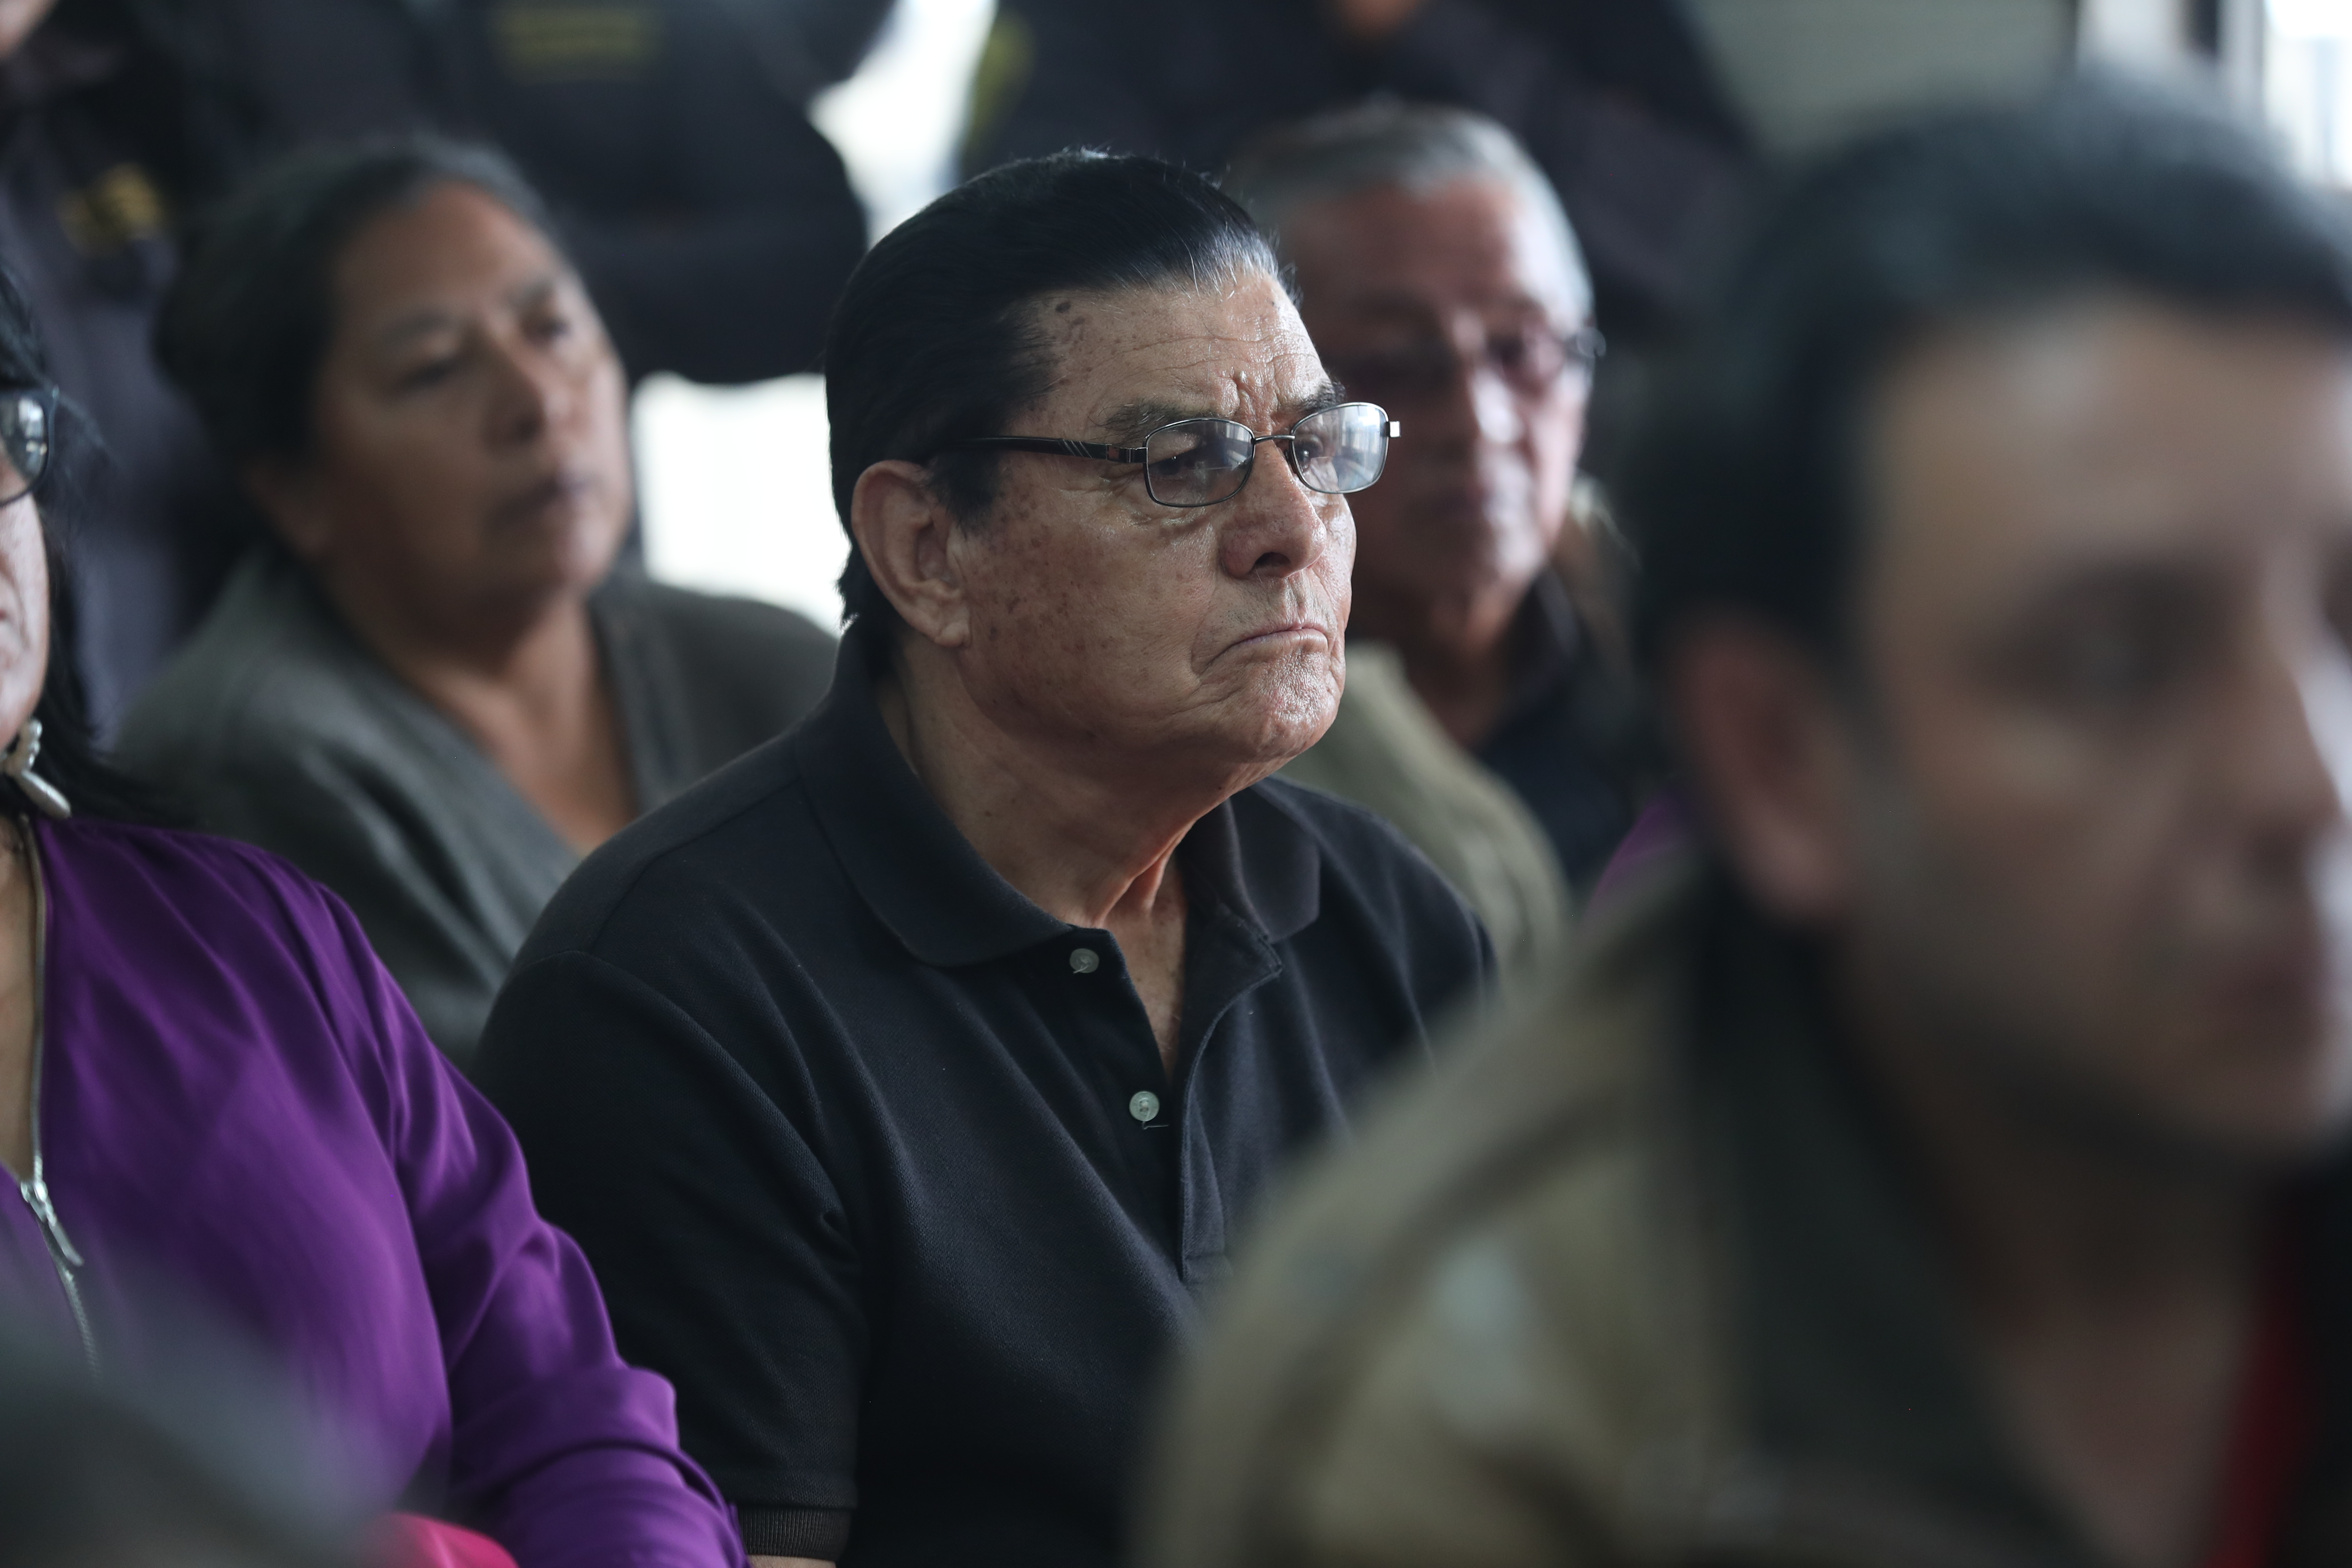 Personas de la tercera edad afectadas por la estafa estuvieron atentas a la resolución del juez en el caso Hunacoop. R.L. (Foto Prensa Libre: Miriam Figueroa)  